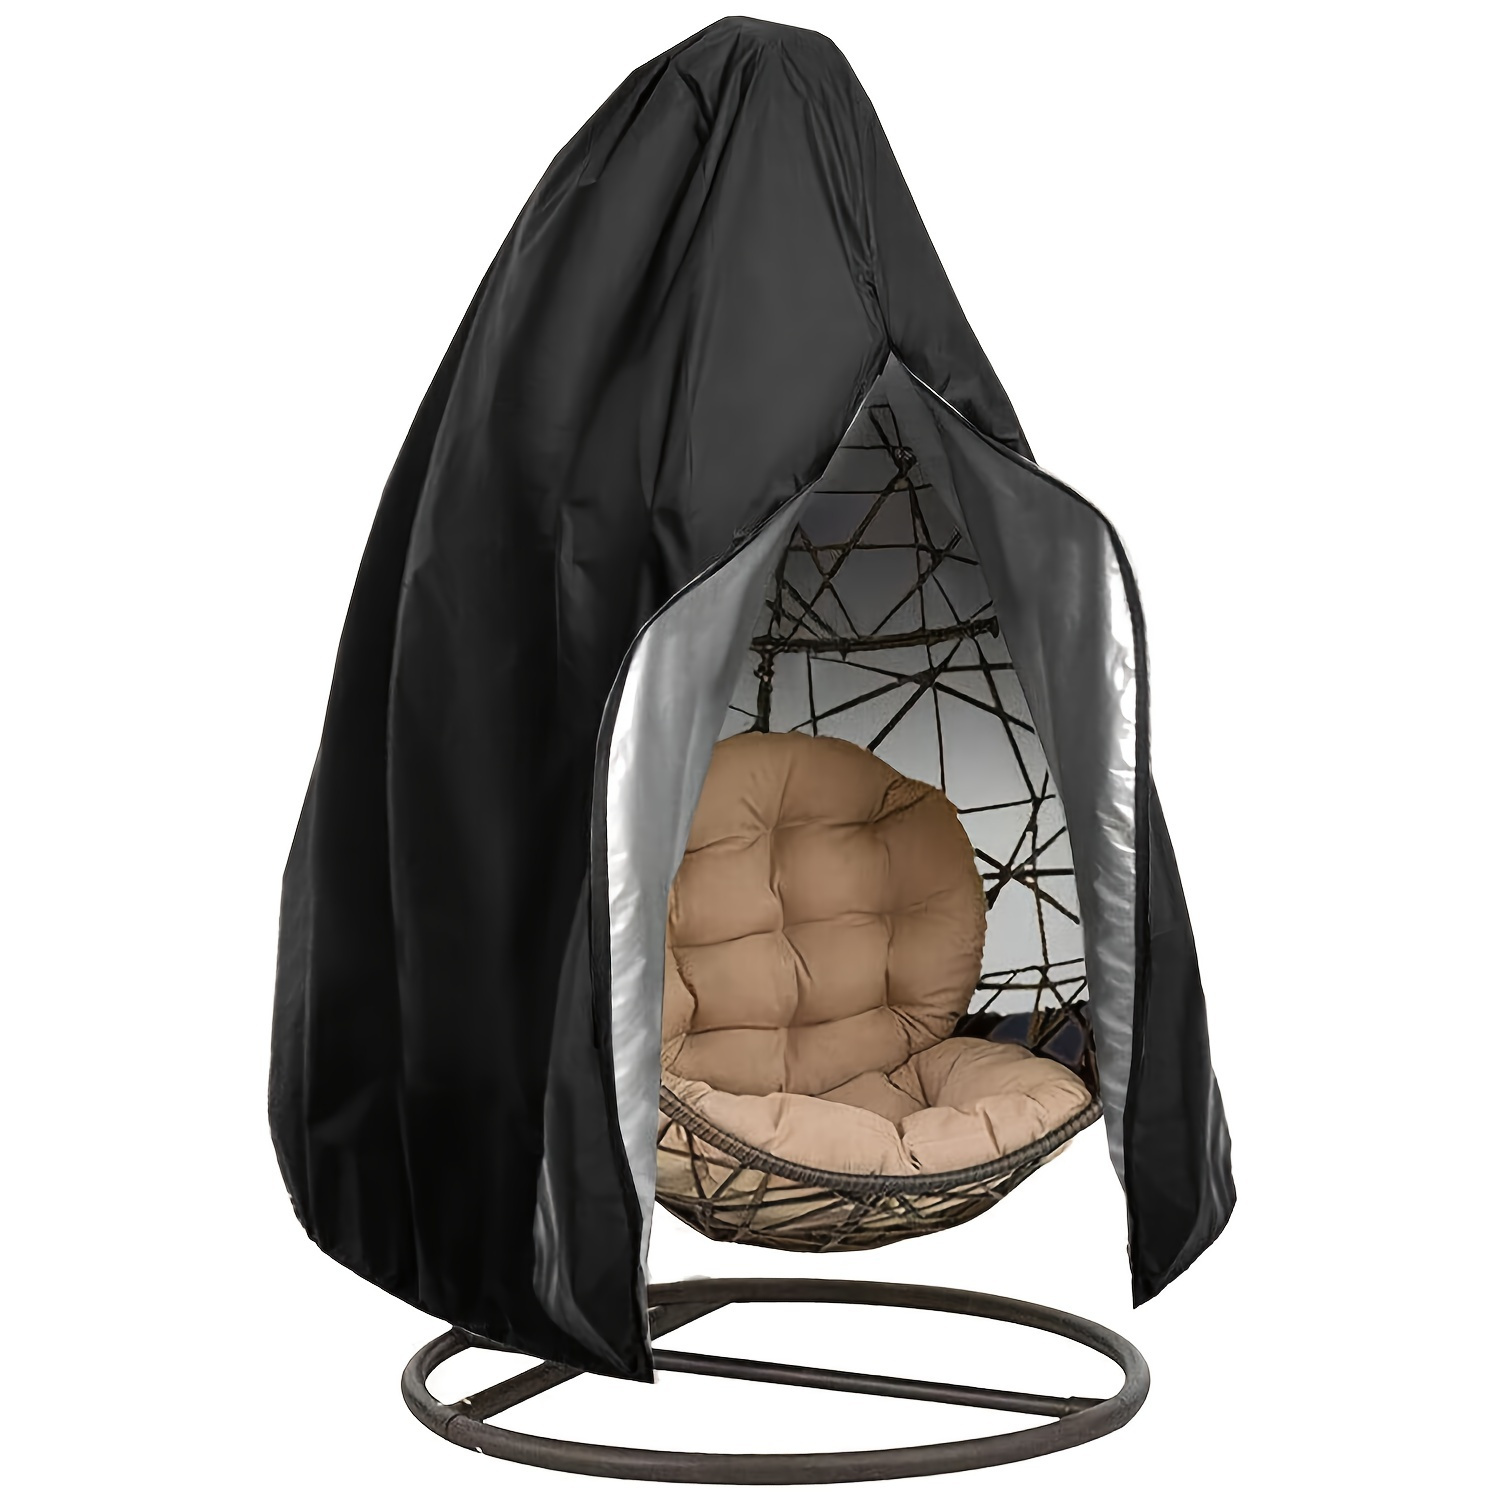 

Housse de protection imperméable et anti-soleil en tissu Oxford 210D pour balançoire en forme d'œuf de jardin extérieur, couverture pour panier suspendu et chaise suspendue dans la cour